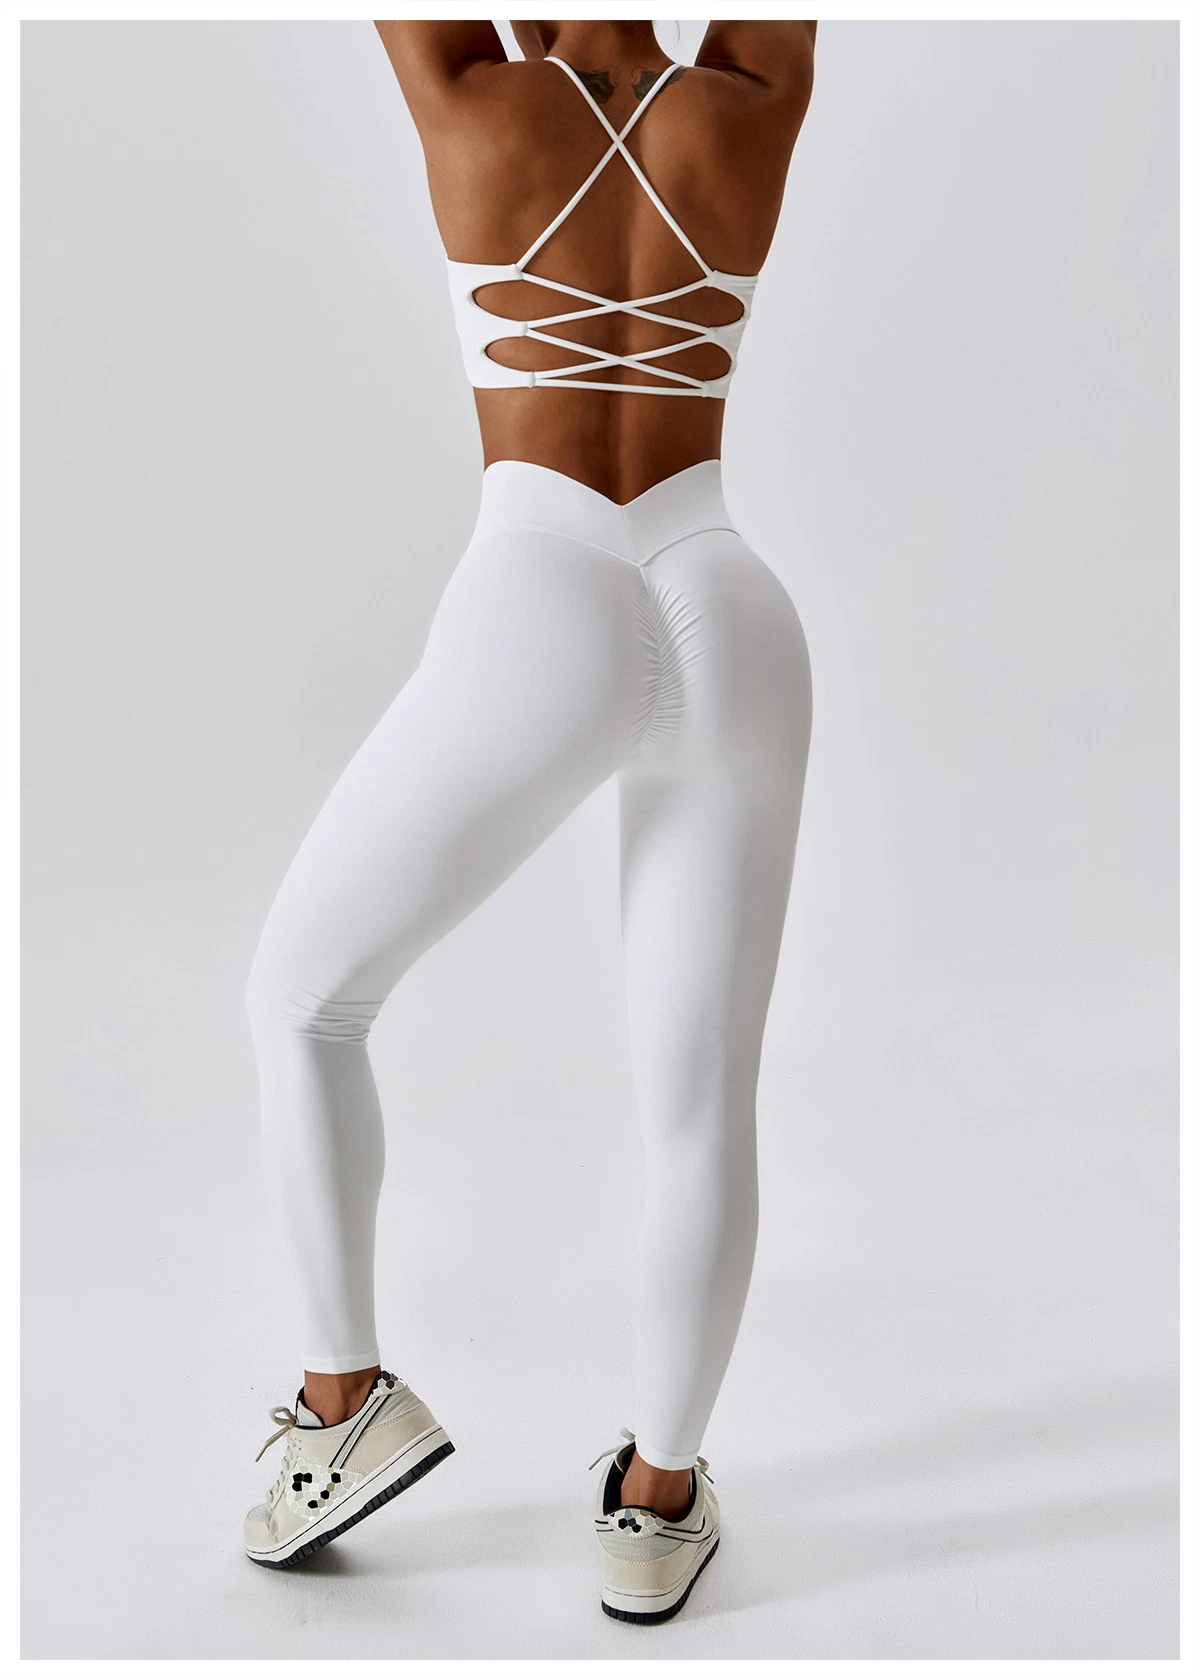 Conjunto de Yoga Gimnasio mujer traje de Deporte de conjunto de ropa de entrenamiento sostén deportivo cintura alta corte en V Leggings traje para Gimnasio prendas de vestir